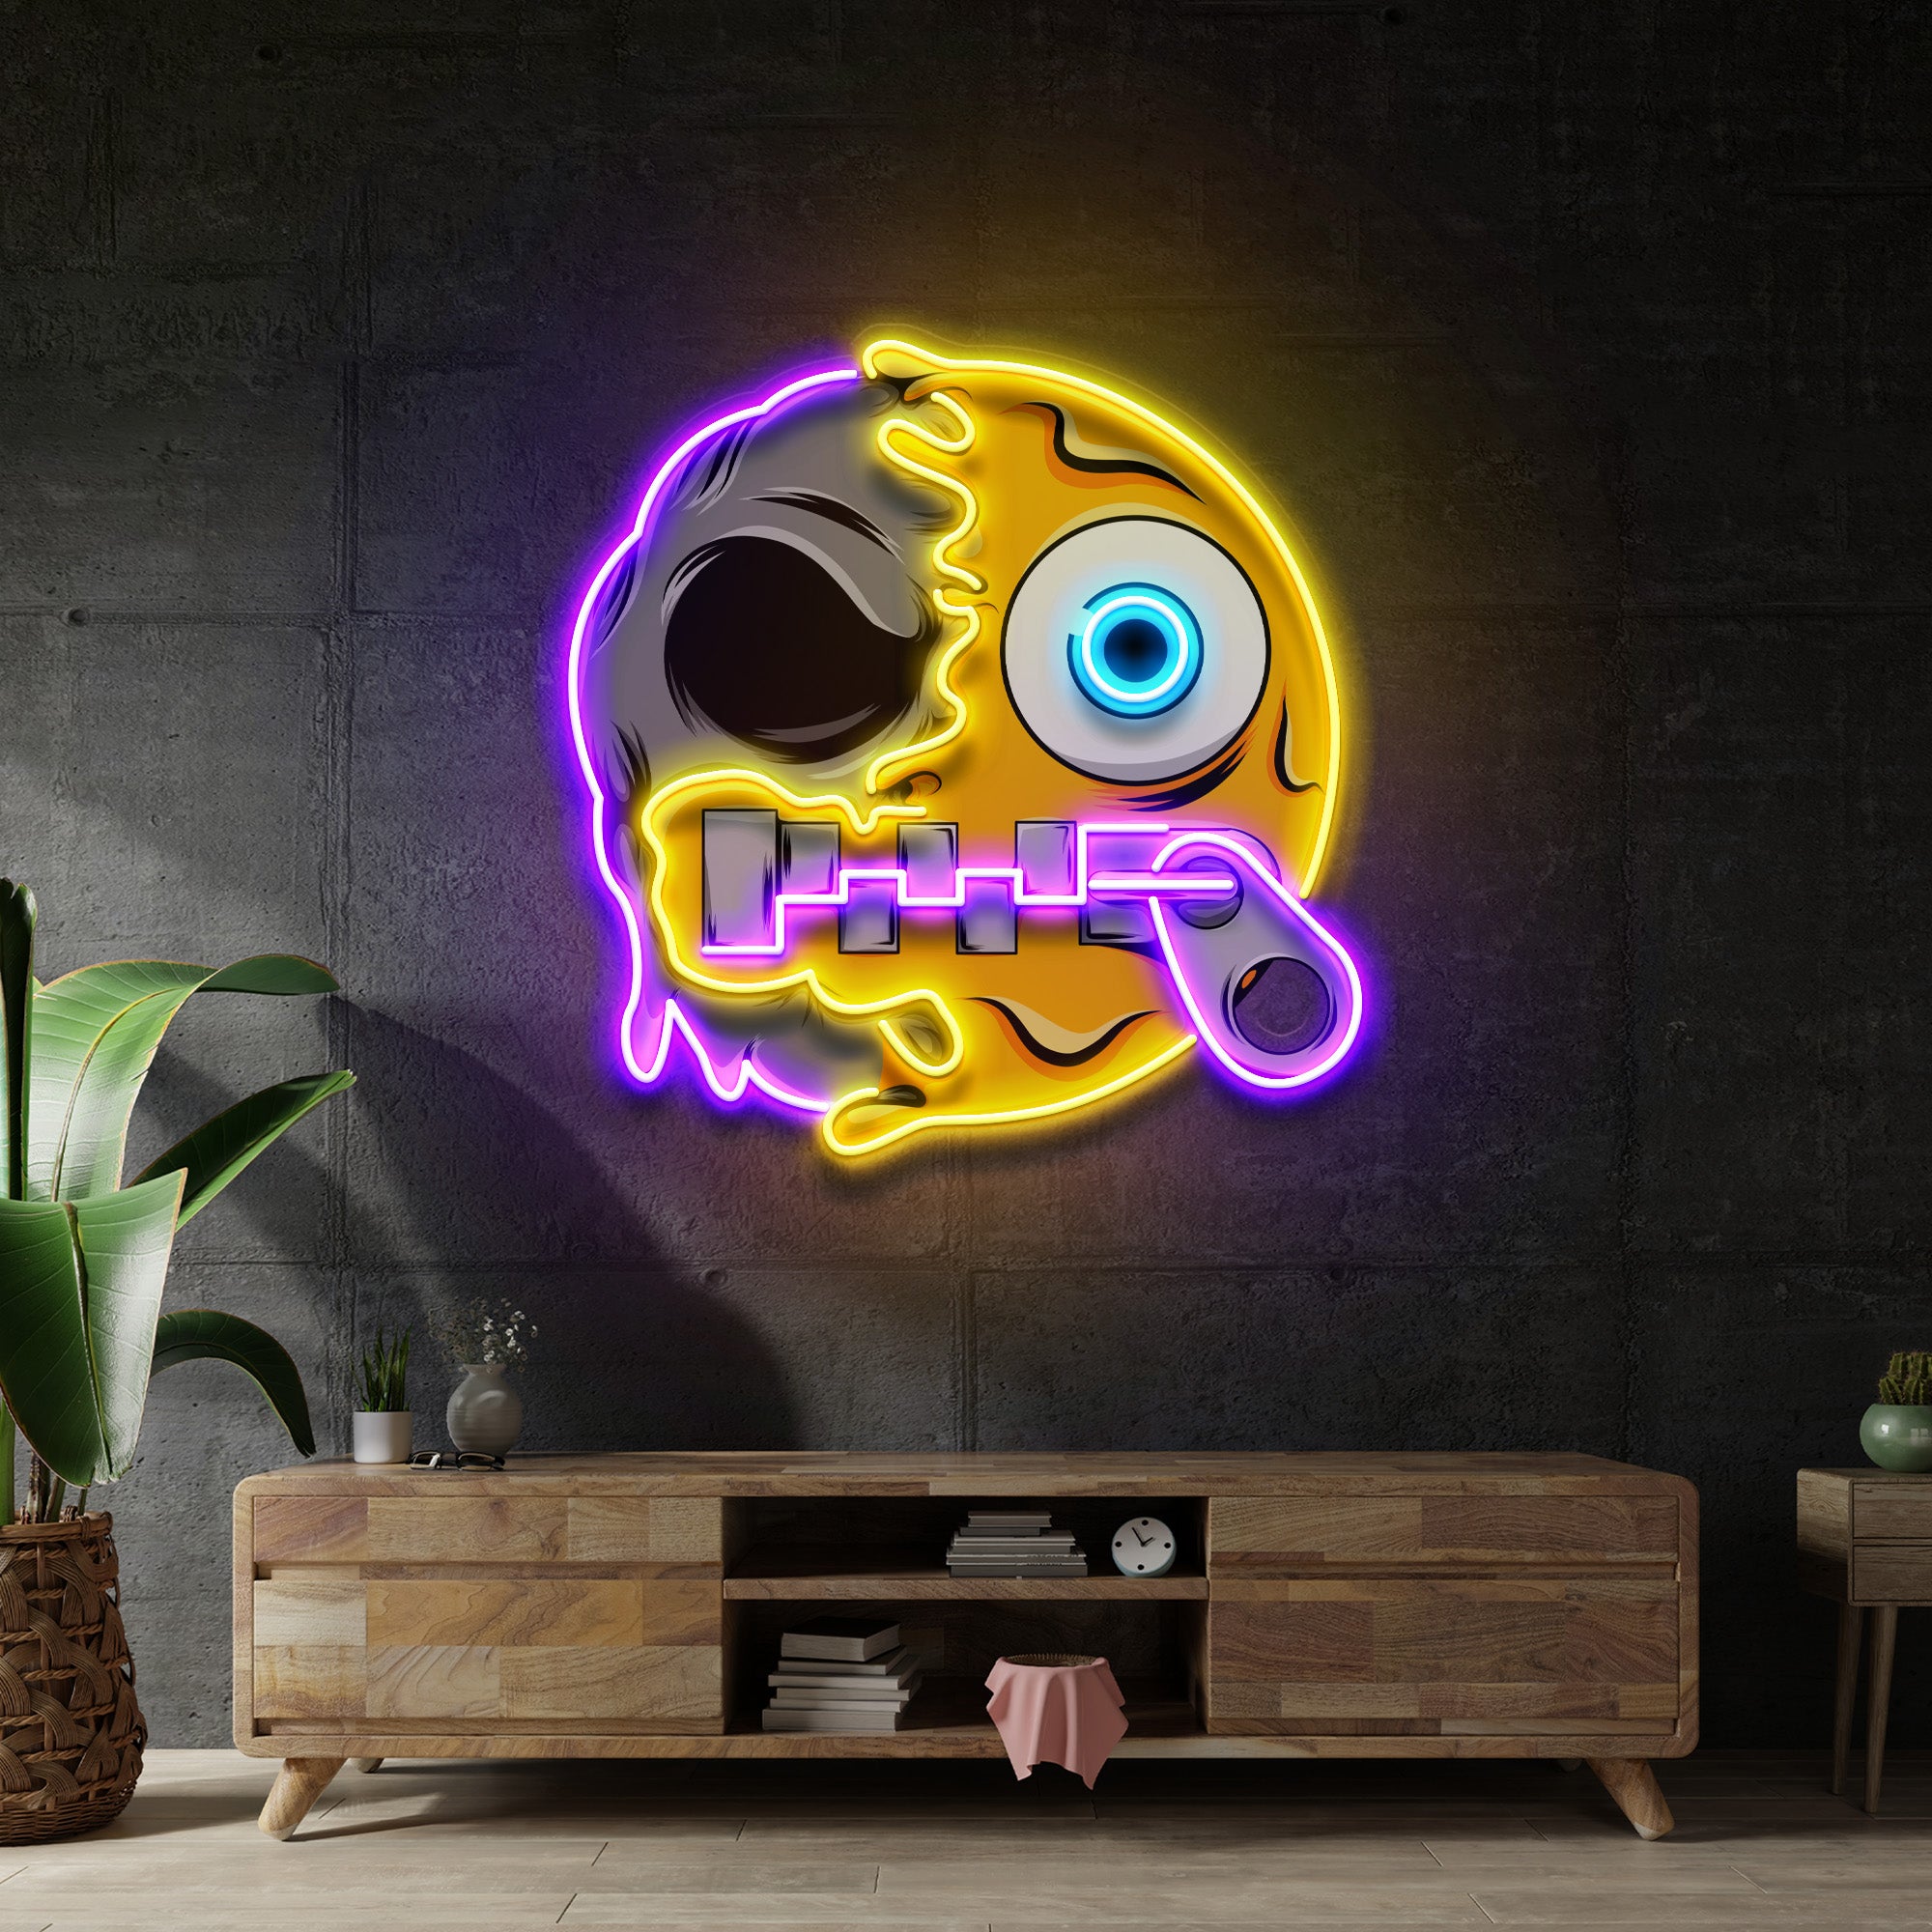 Silence Emoji Skull LED Neon Sign Light Pop Art